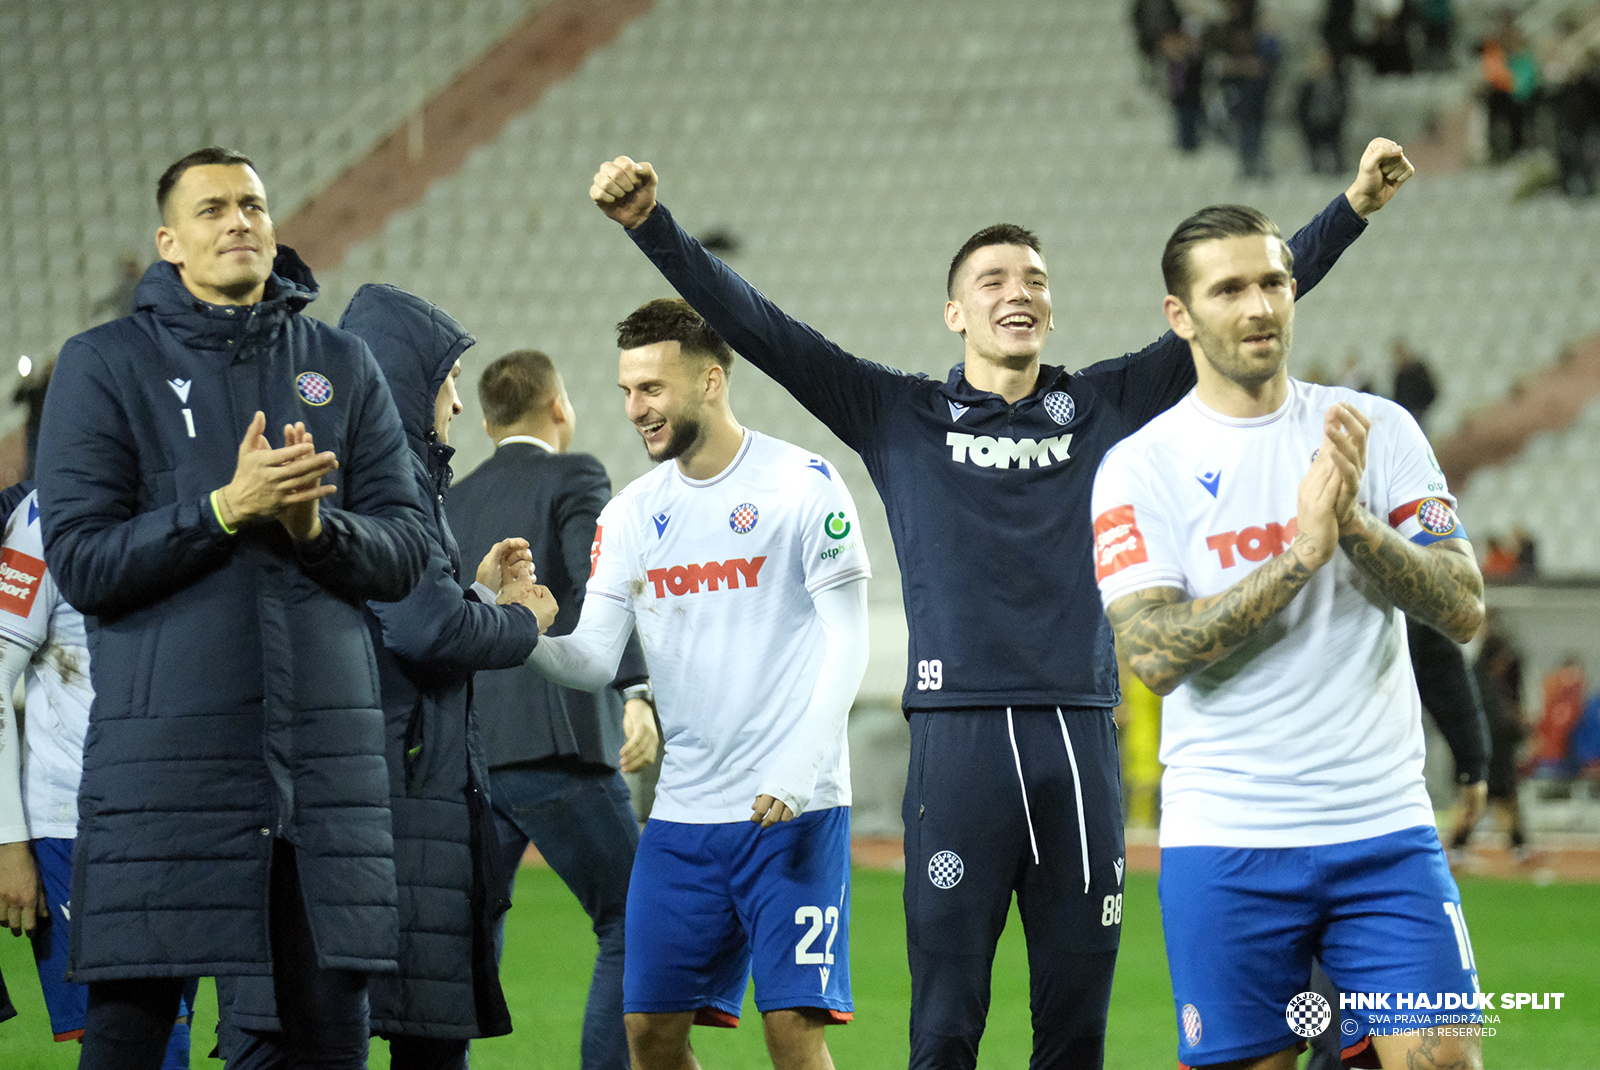 Hajduk - Gorica 3:0